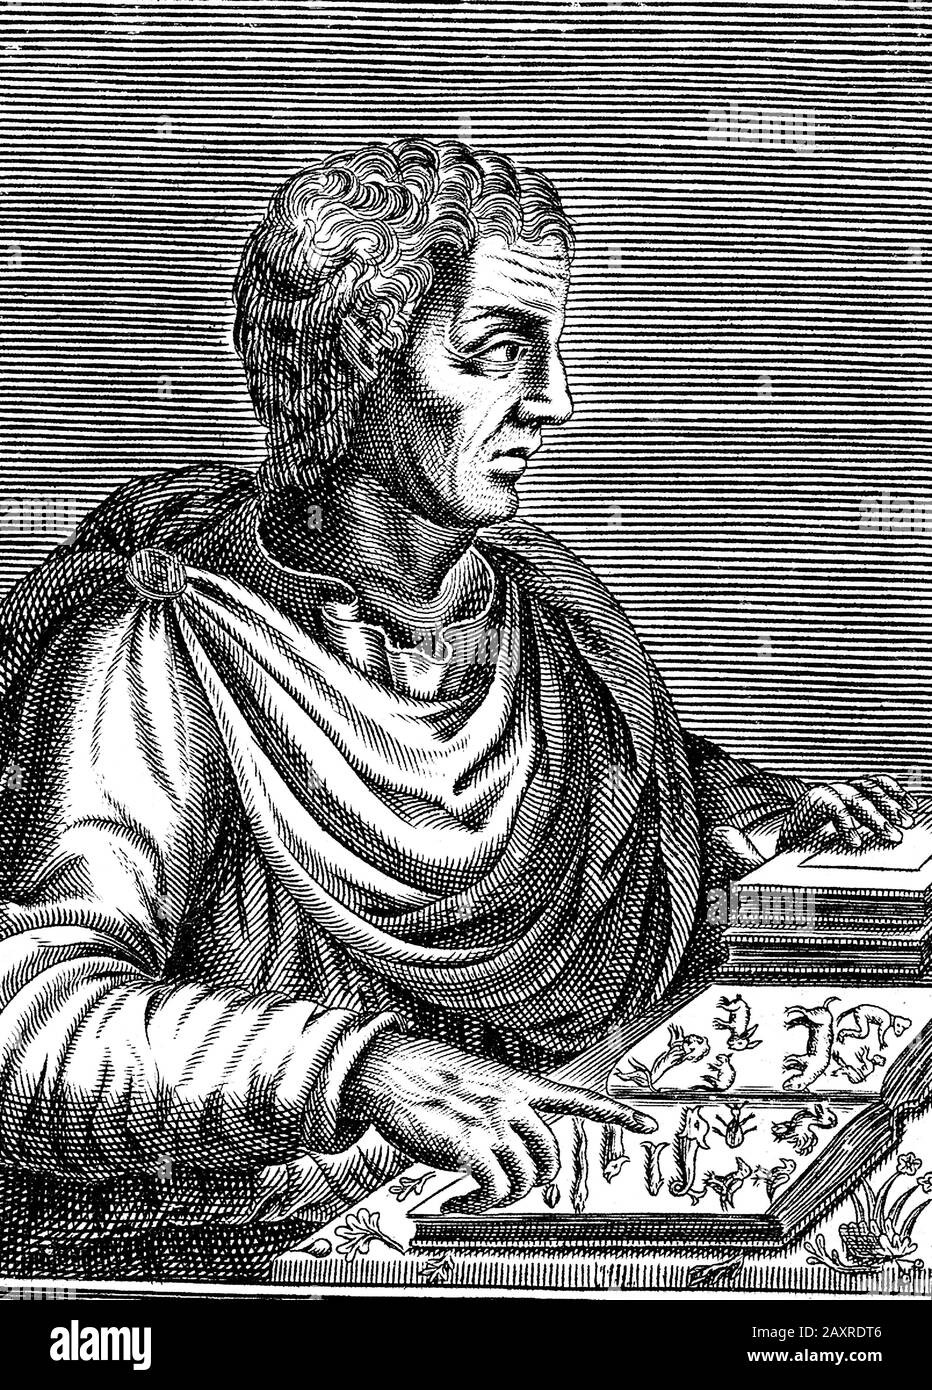 Il celebre scrittore di Roma antica, filosofo e naturalista PLINIO il VECCHIO ( Gaius Plinius Secundus , Pliny the Elder ) (ad 23ca –79 ). Ritratto di incisore non intrisificato, pubblicato nel 1670 . - NATURALISTA - SCIENZA - SCIENZE - SCENZIATO - SCRITORE - LETTERATURA - LETTERATURA - FILOSOFIA - FILOSOFIA - INCISIONE - INCISIONE - ILLUSTRAZIONE - ILLUSTRAZIONE - ANTICA ROMA --- ARCHIVIO GBB Foto Stock